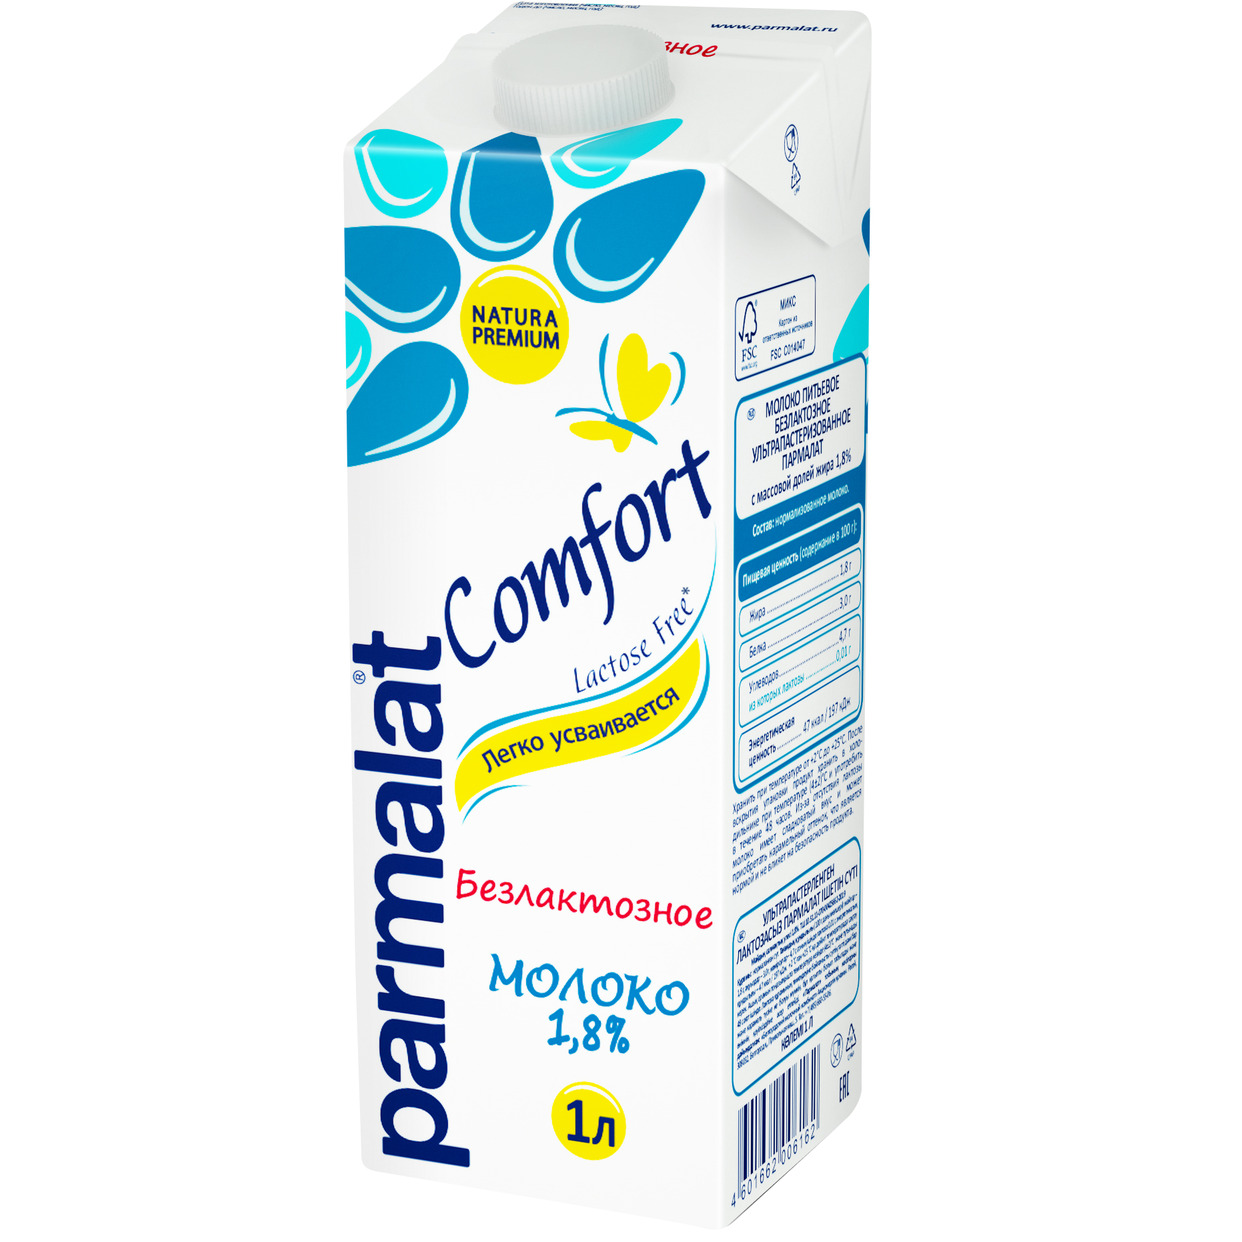 БЗМЖ Молоко питьевое безлактозное у/паст.Parmalat Comfort 1,8% 1л. по акции в Пятерочке